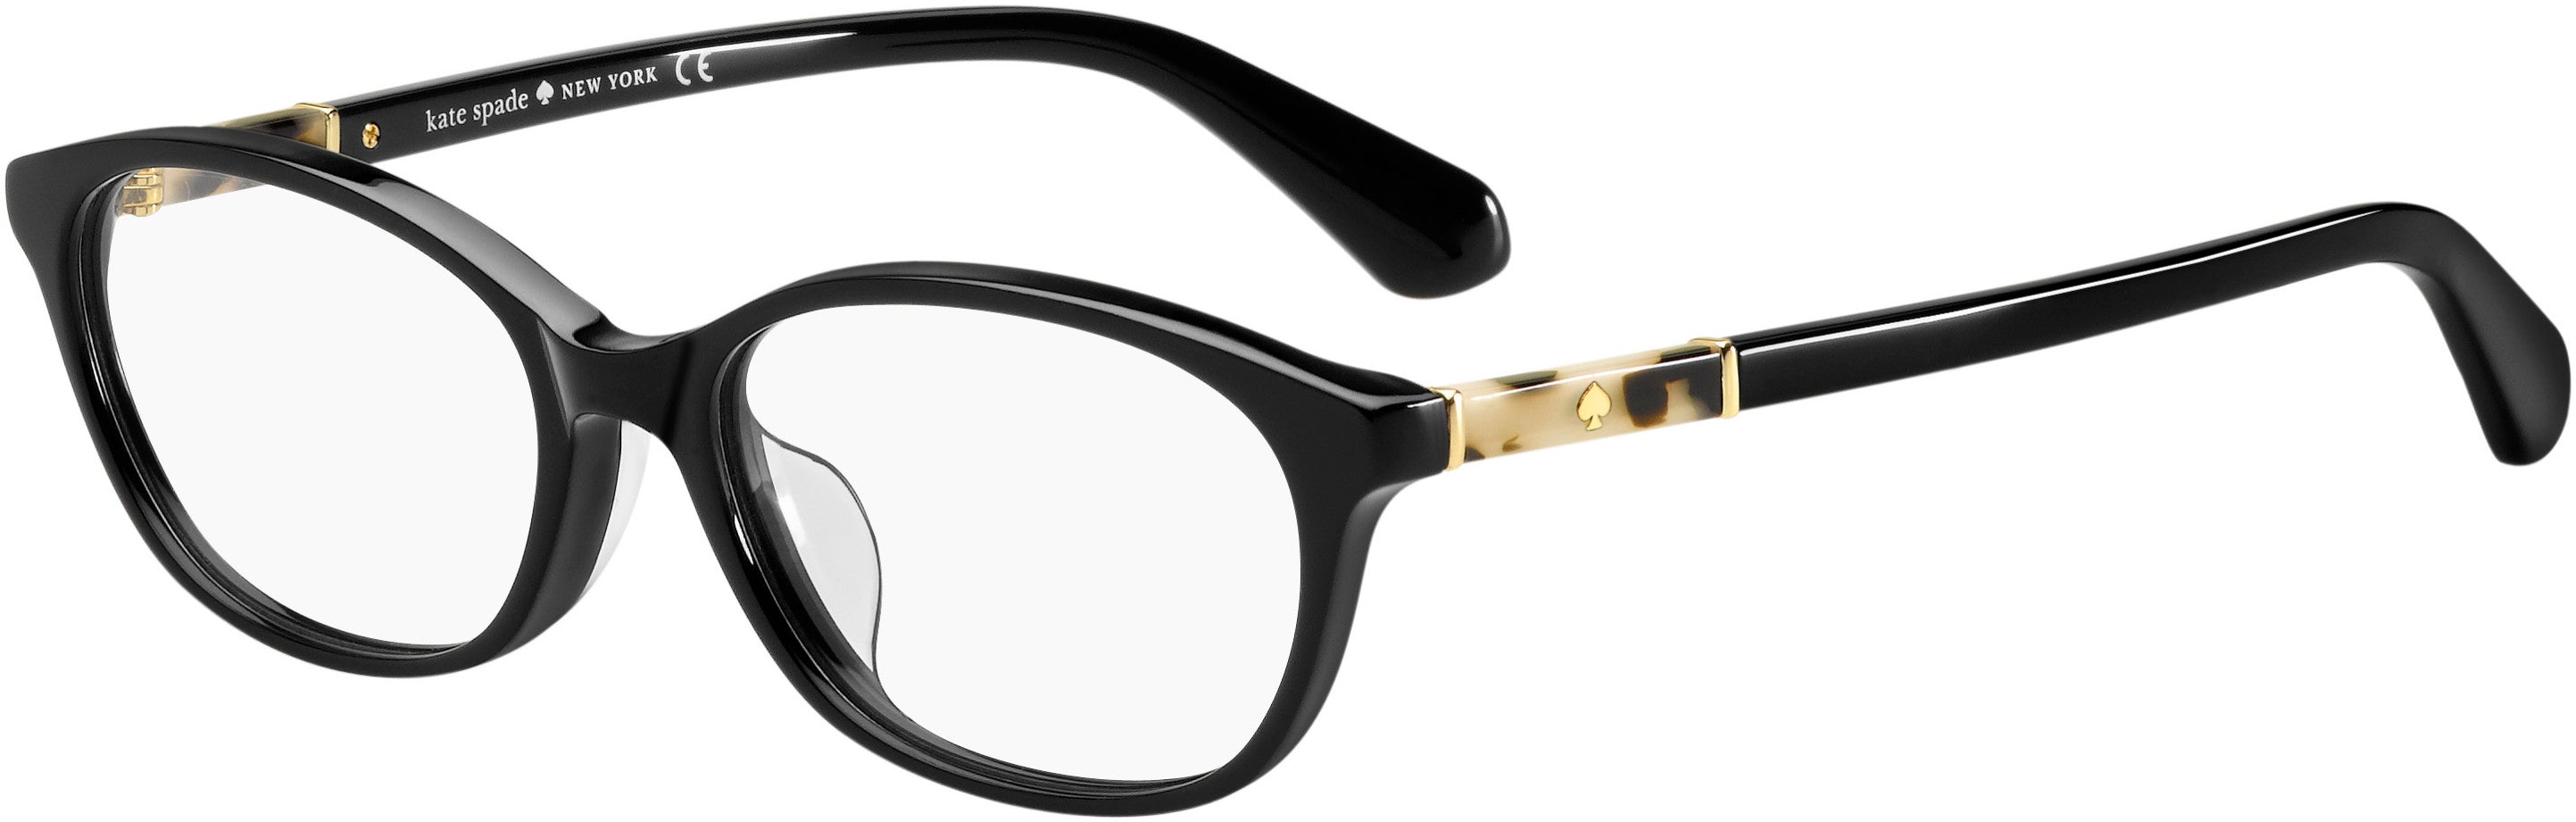 Kate Spade Niki/F Rectangular Eyeglasses 0WR7-0WR7  Black Havana (00 Demo Lens)